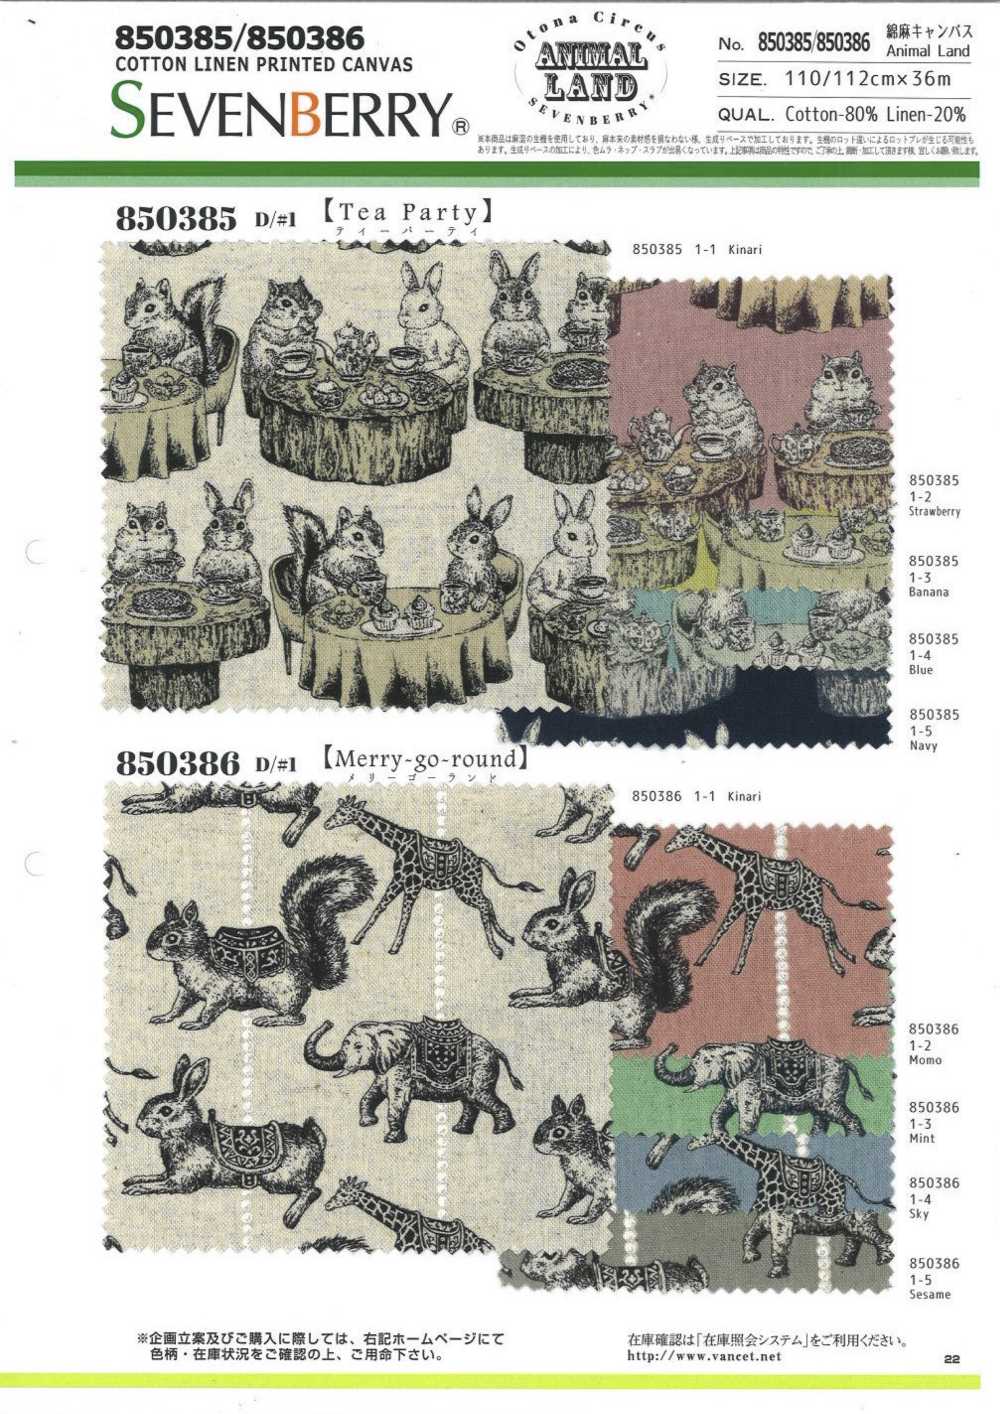 850385 Linen Linen Canvas Animal Land Tea Party[Textile / Fabric] VANCET